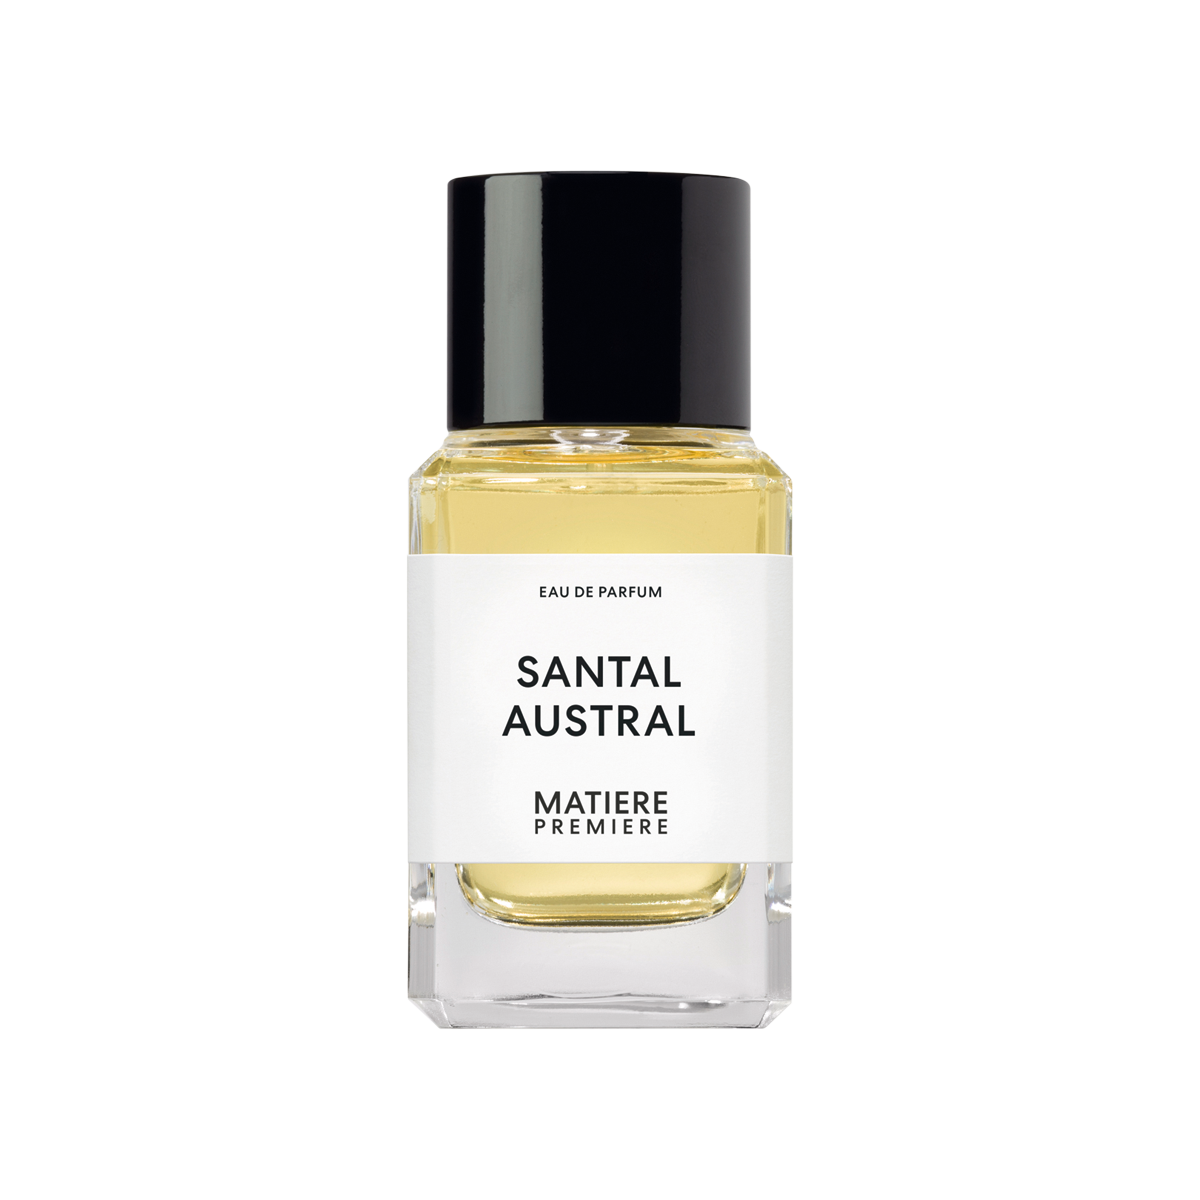 Matiere Premiere - Santal Austral Eau de Parfum